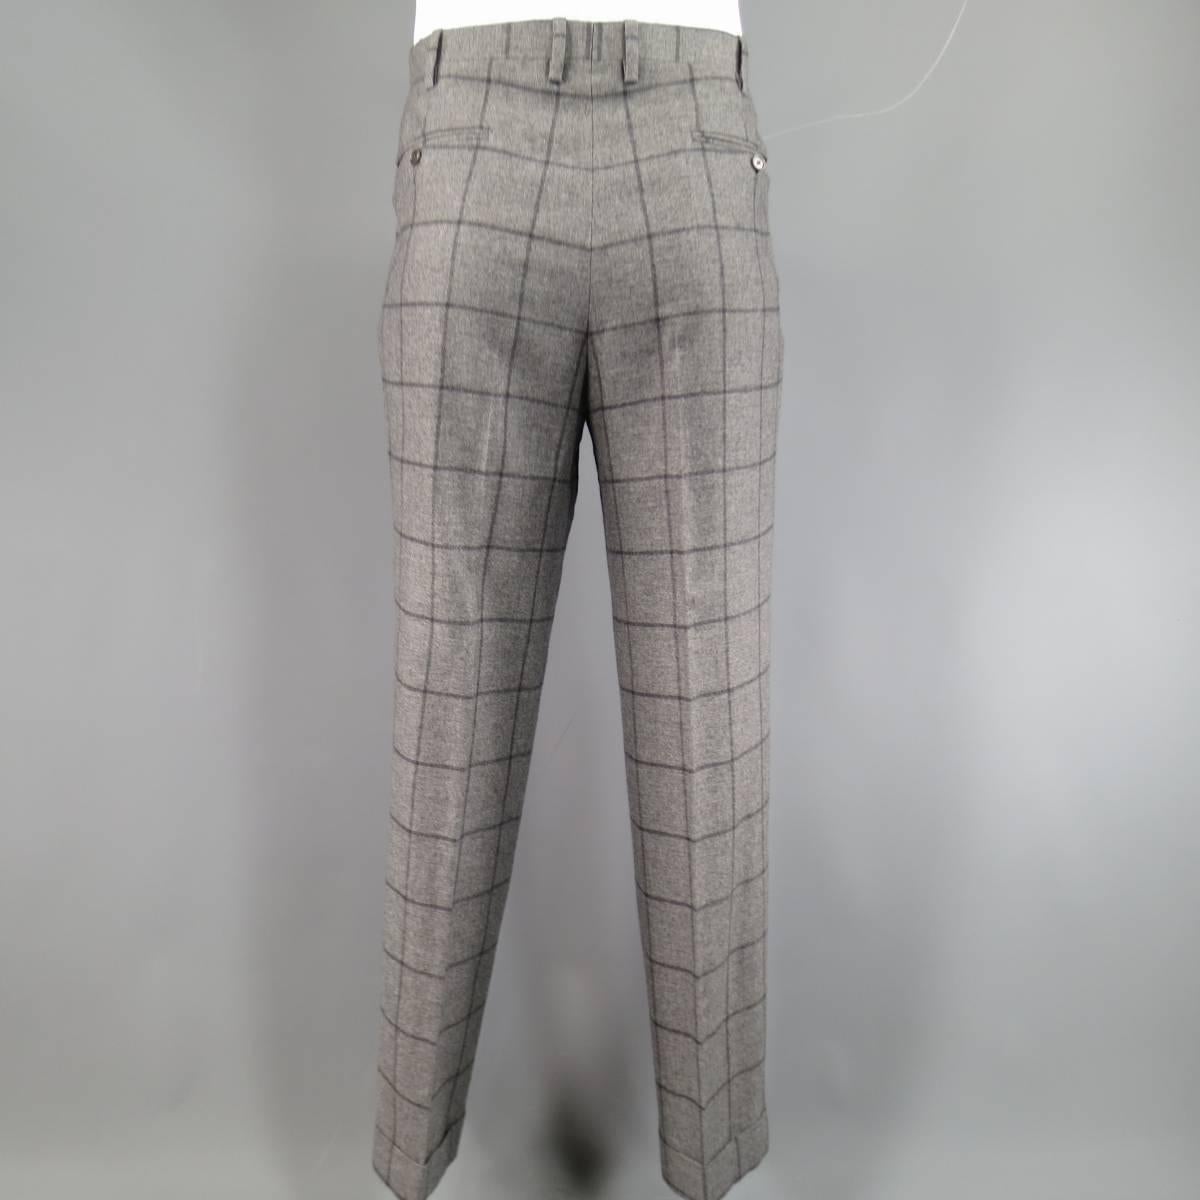 Kiton Men's Suit 46 R 3 Button Gray Windowpane Cashmere Notch Lapel Jacket Pants 3